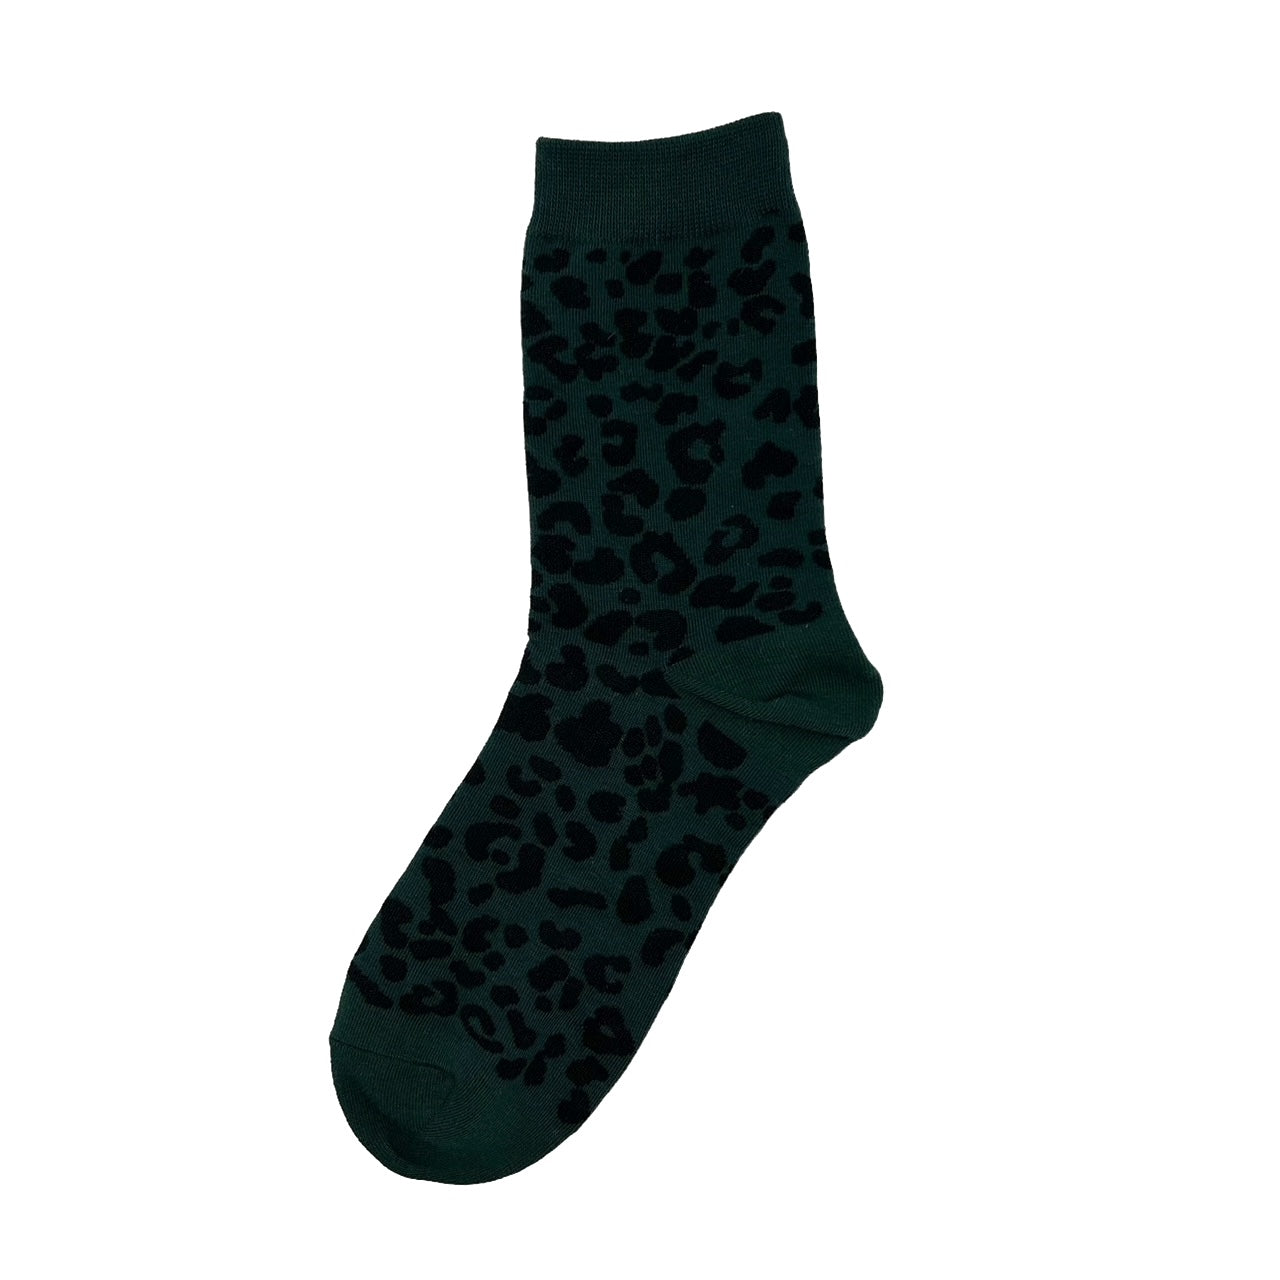 Leopard print socks